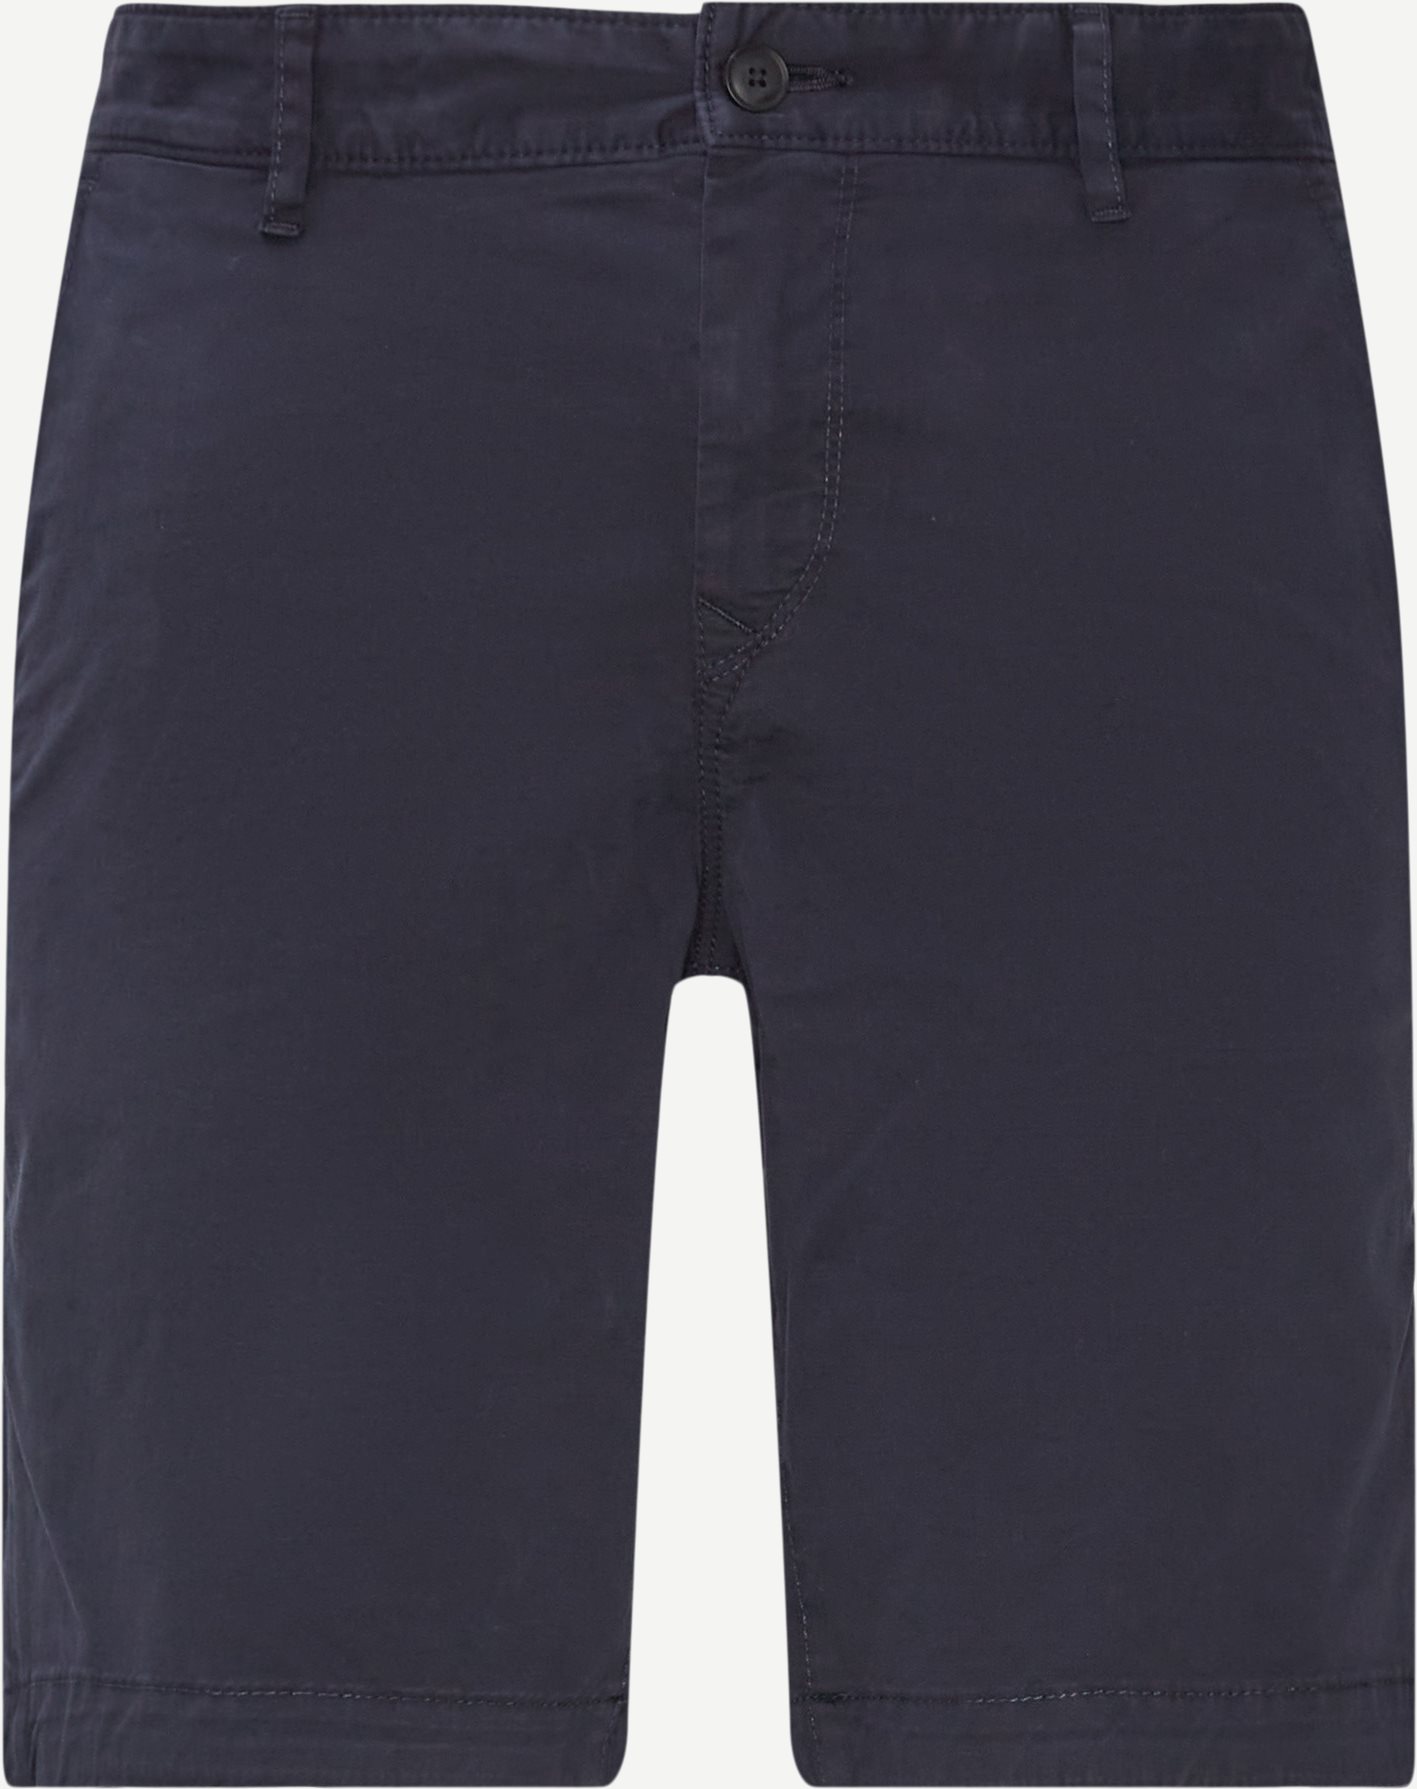 Shorts - Slim fit - Blå